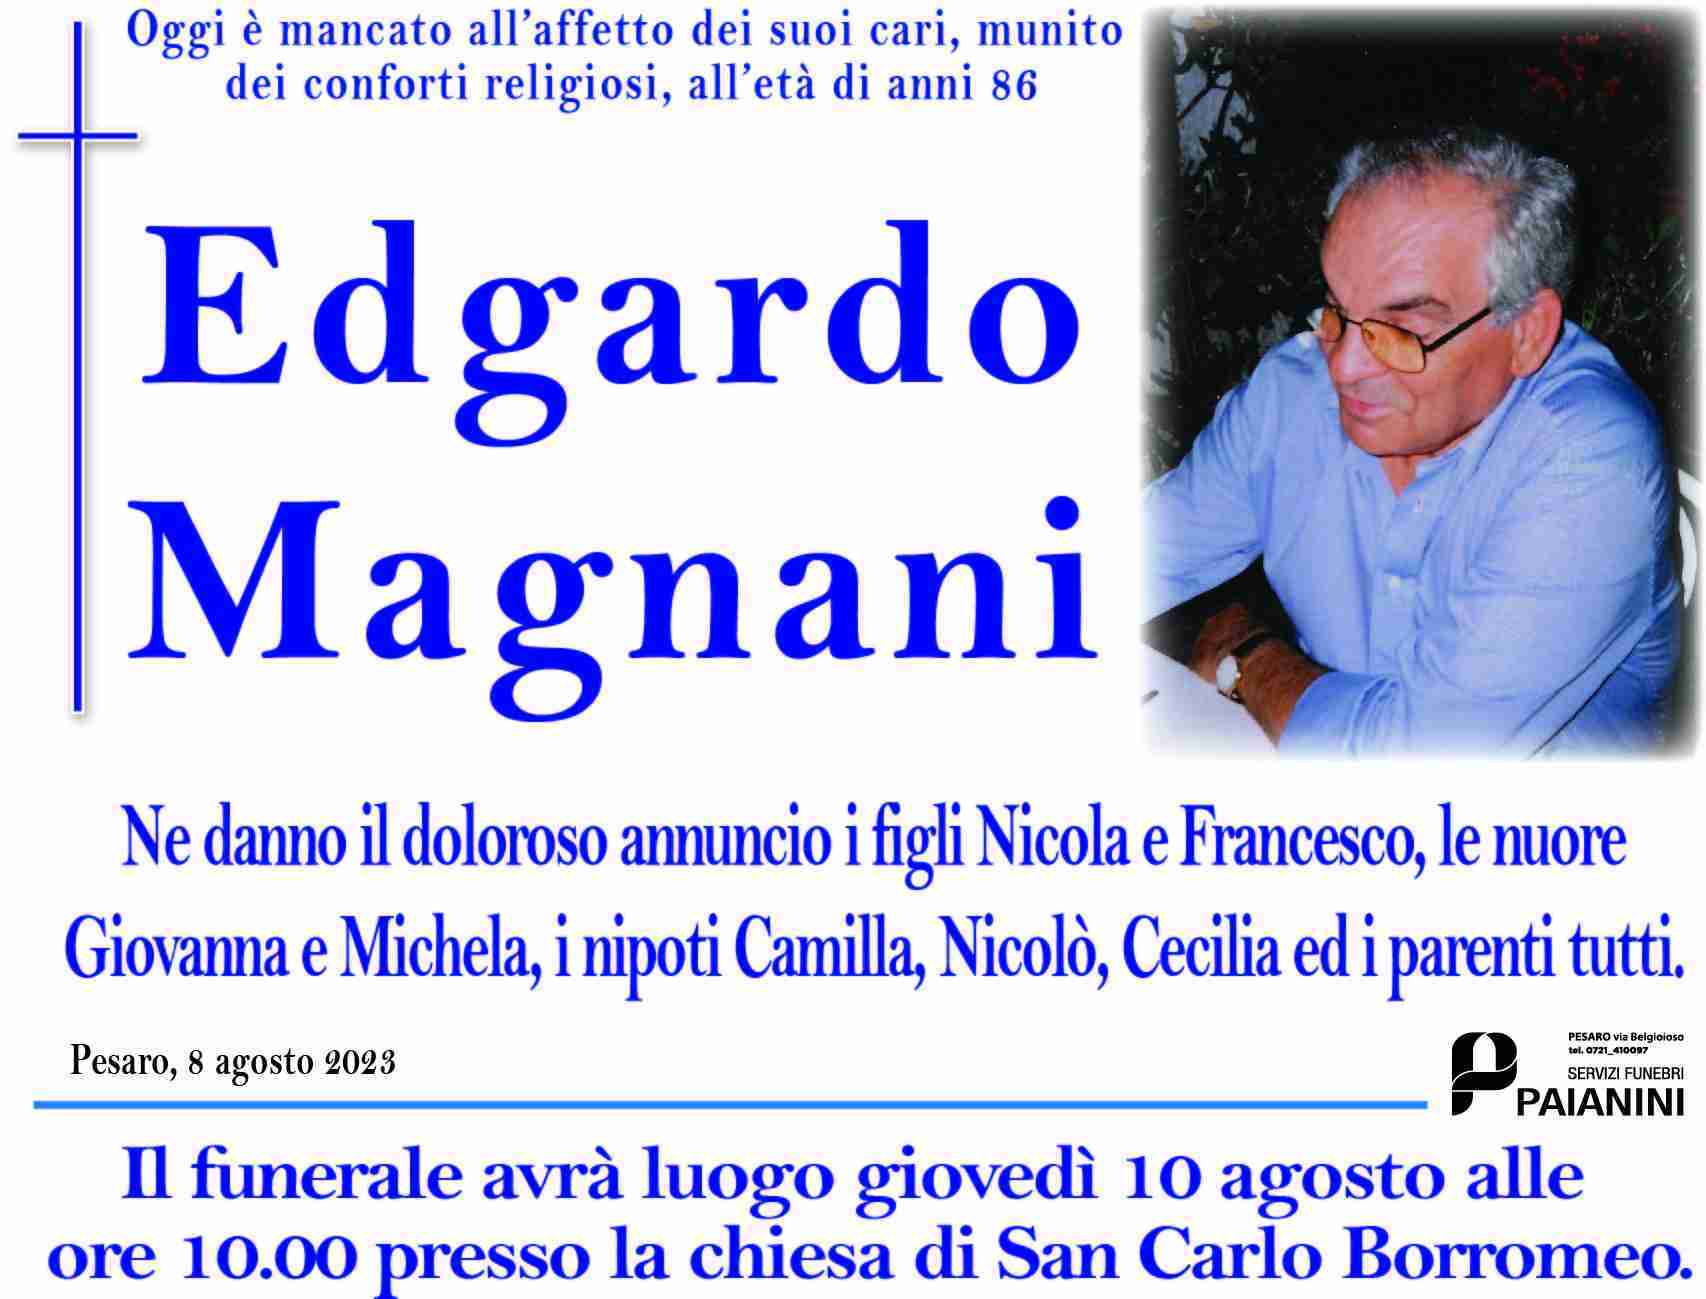 Edgardo Magnani